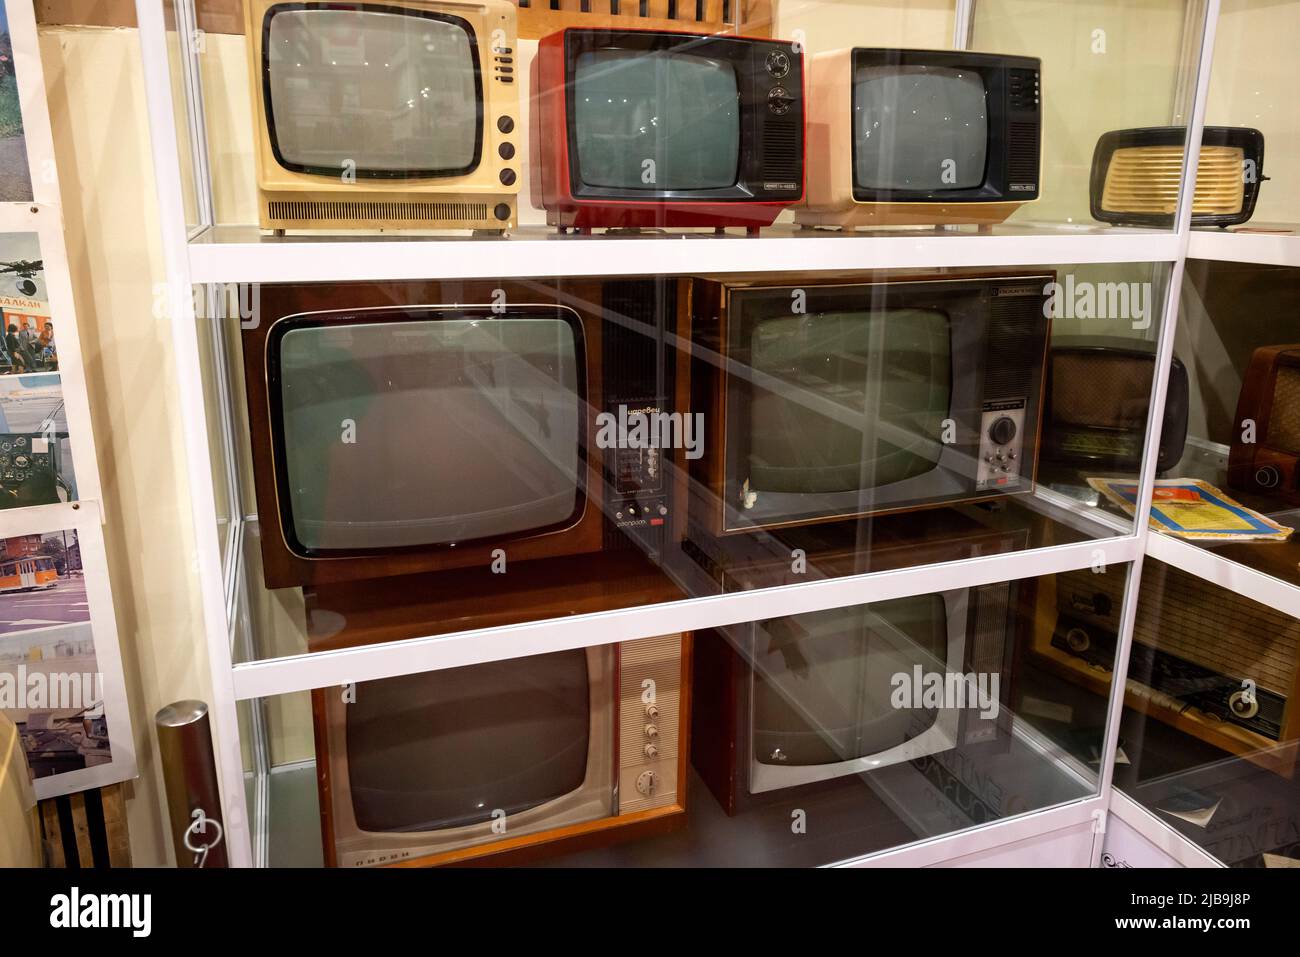 Collezione di vecchi televisori russi e bulgari in mostra presso il Museo del socialismo nella città di Peshtera, Bulgaria, Europa orientale, Balcani, UE Foto Stock